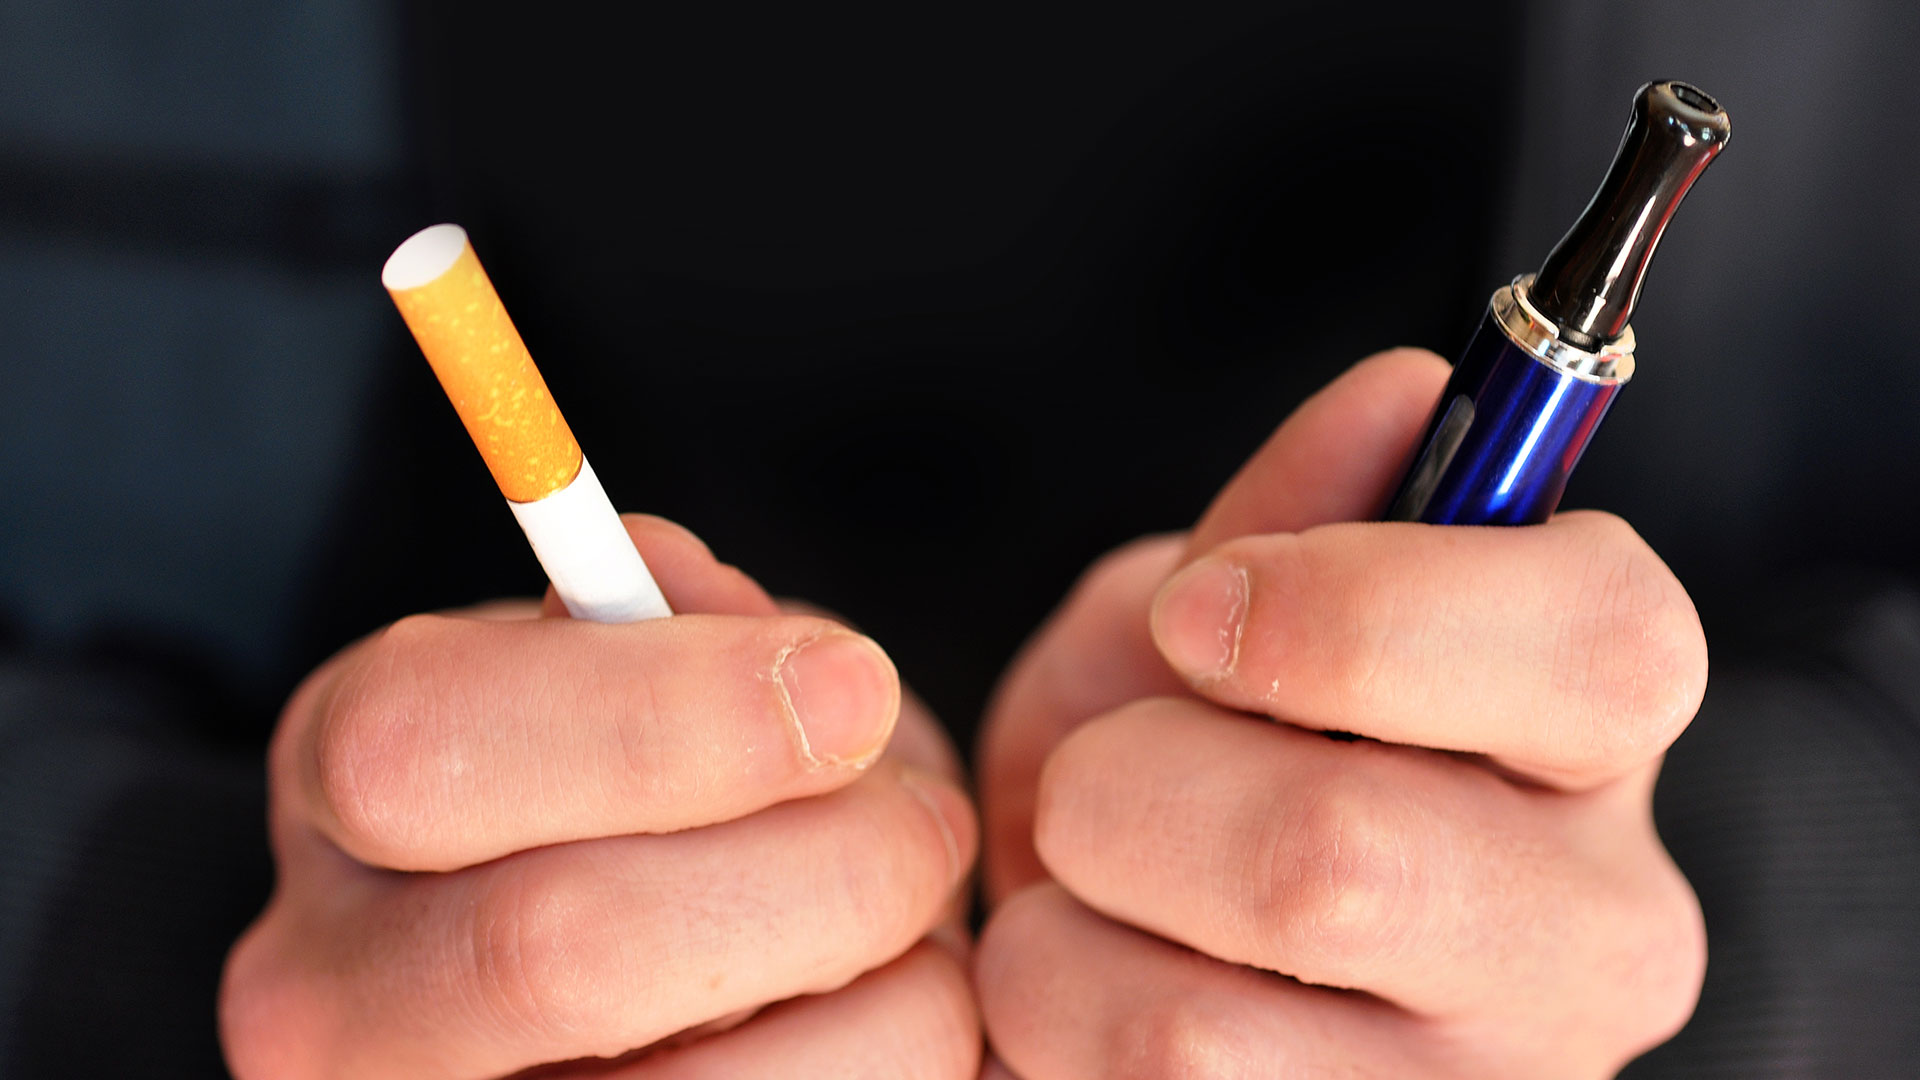 Datos publicados en un informe en Scientific American indican que alrededor del 20% de los estudiantes de secundaria de EEUU dicen que usan algún tipo de cigarrillo electrónico o dispositivo de vapeo, en comparación con el 27,5% en 2019 (Getty Images)